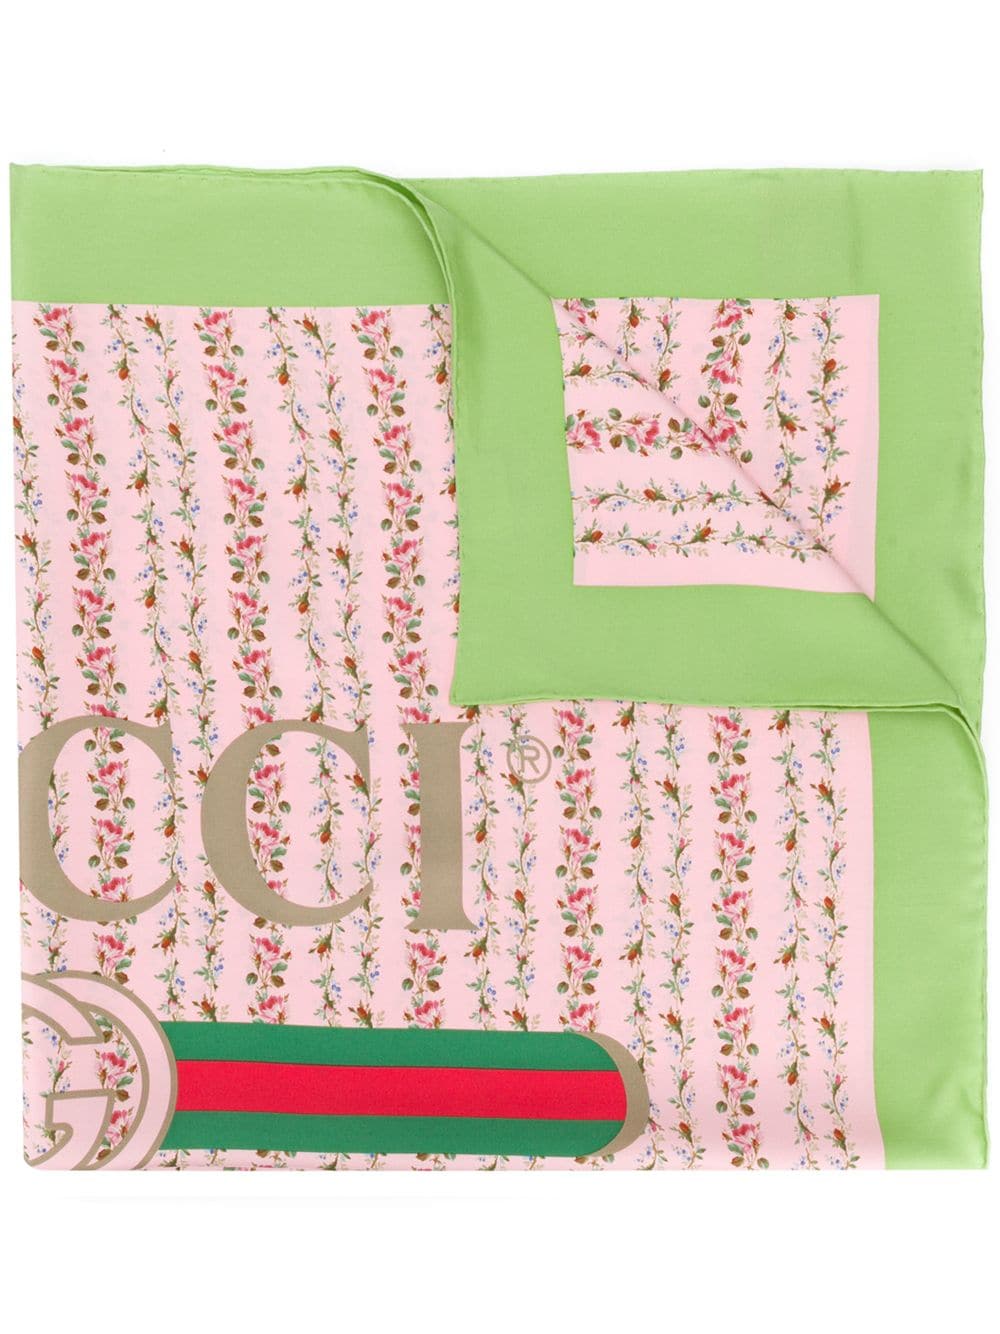 фото Gucci платок с принтом роз и логотипа